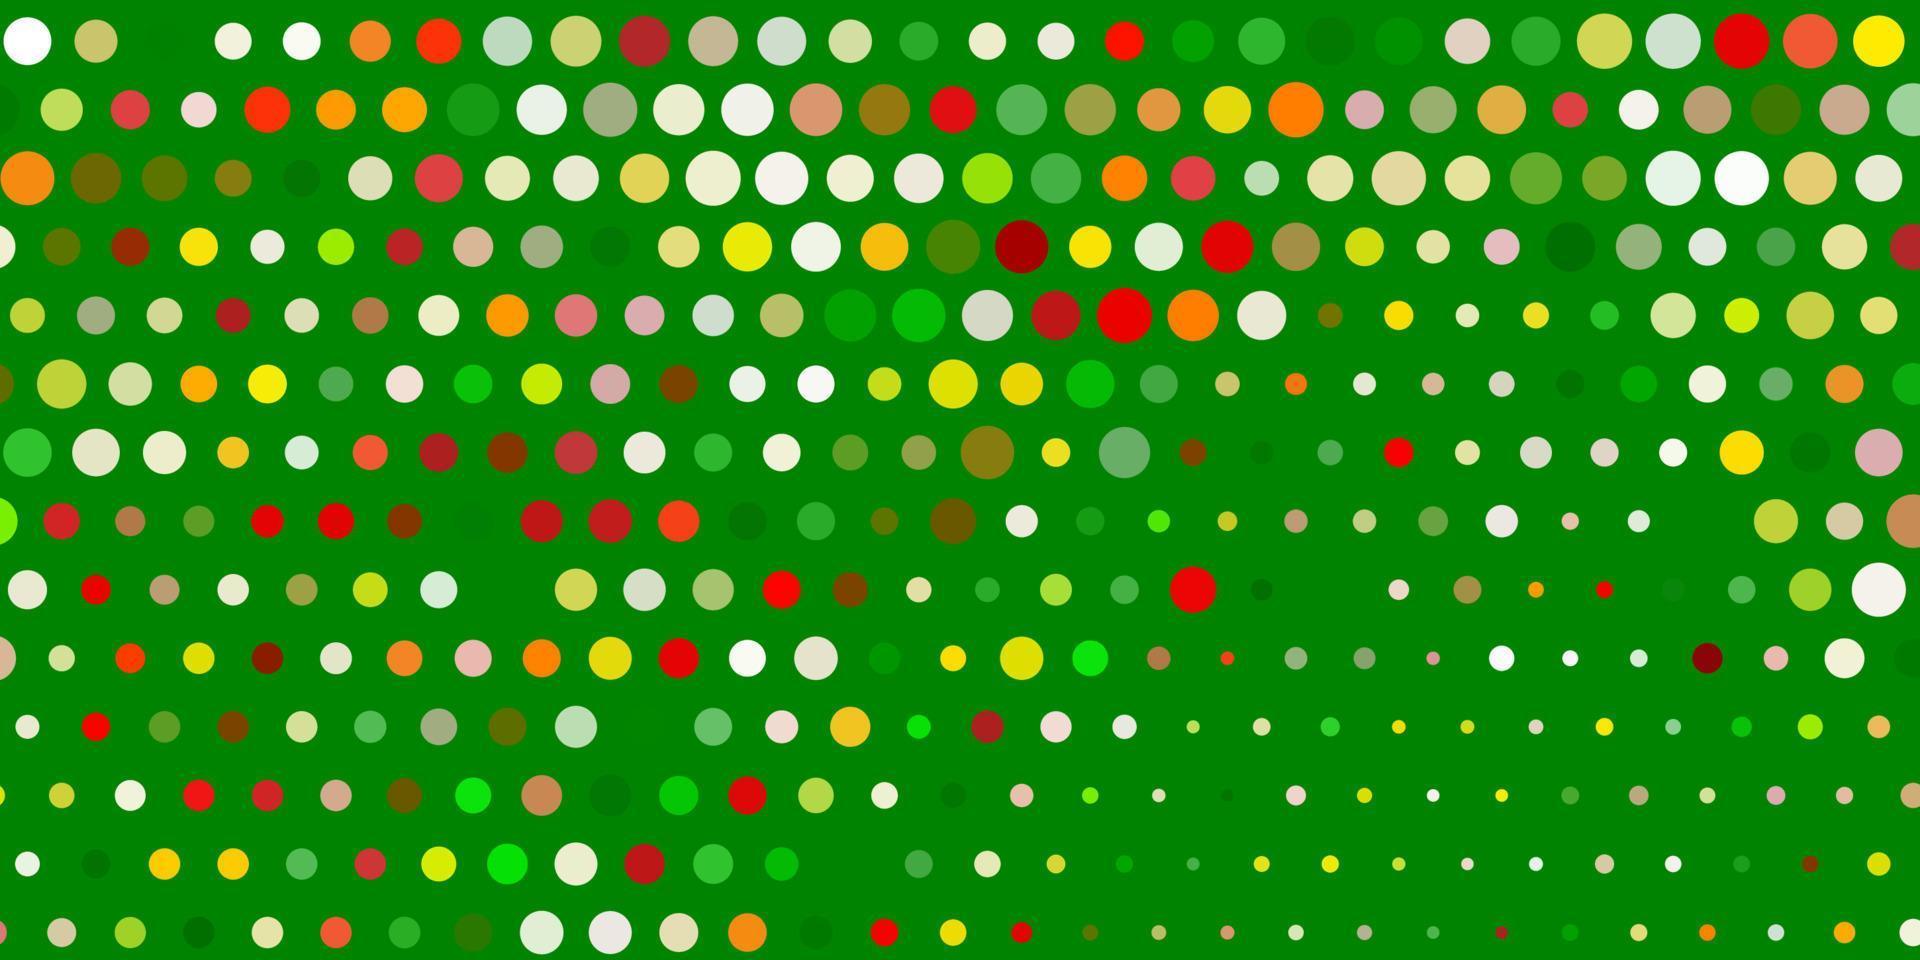 textura de vetor verde e vermelho claro com discos.